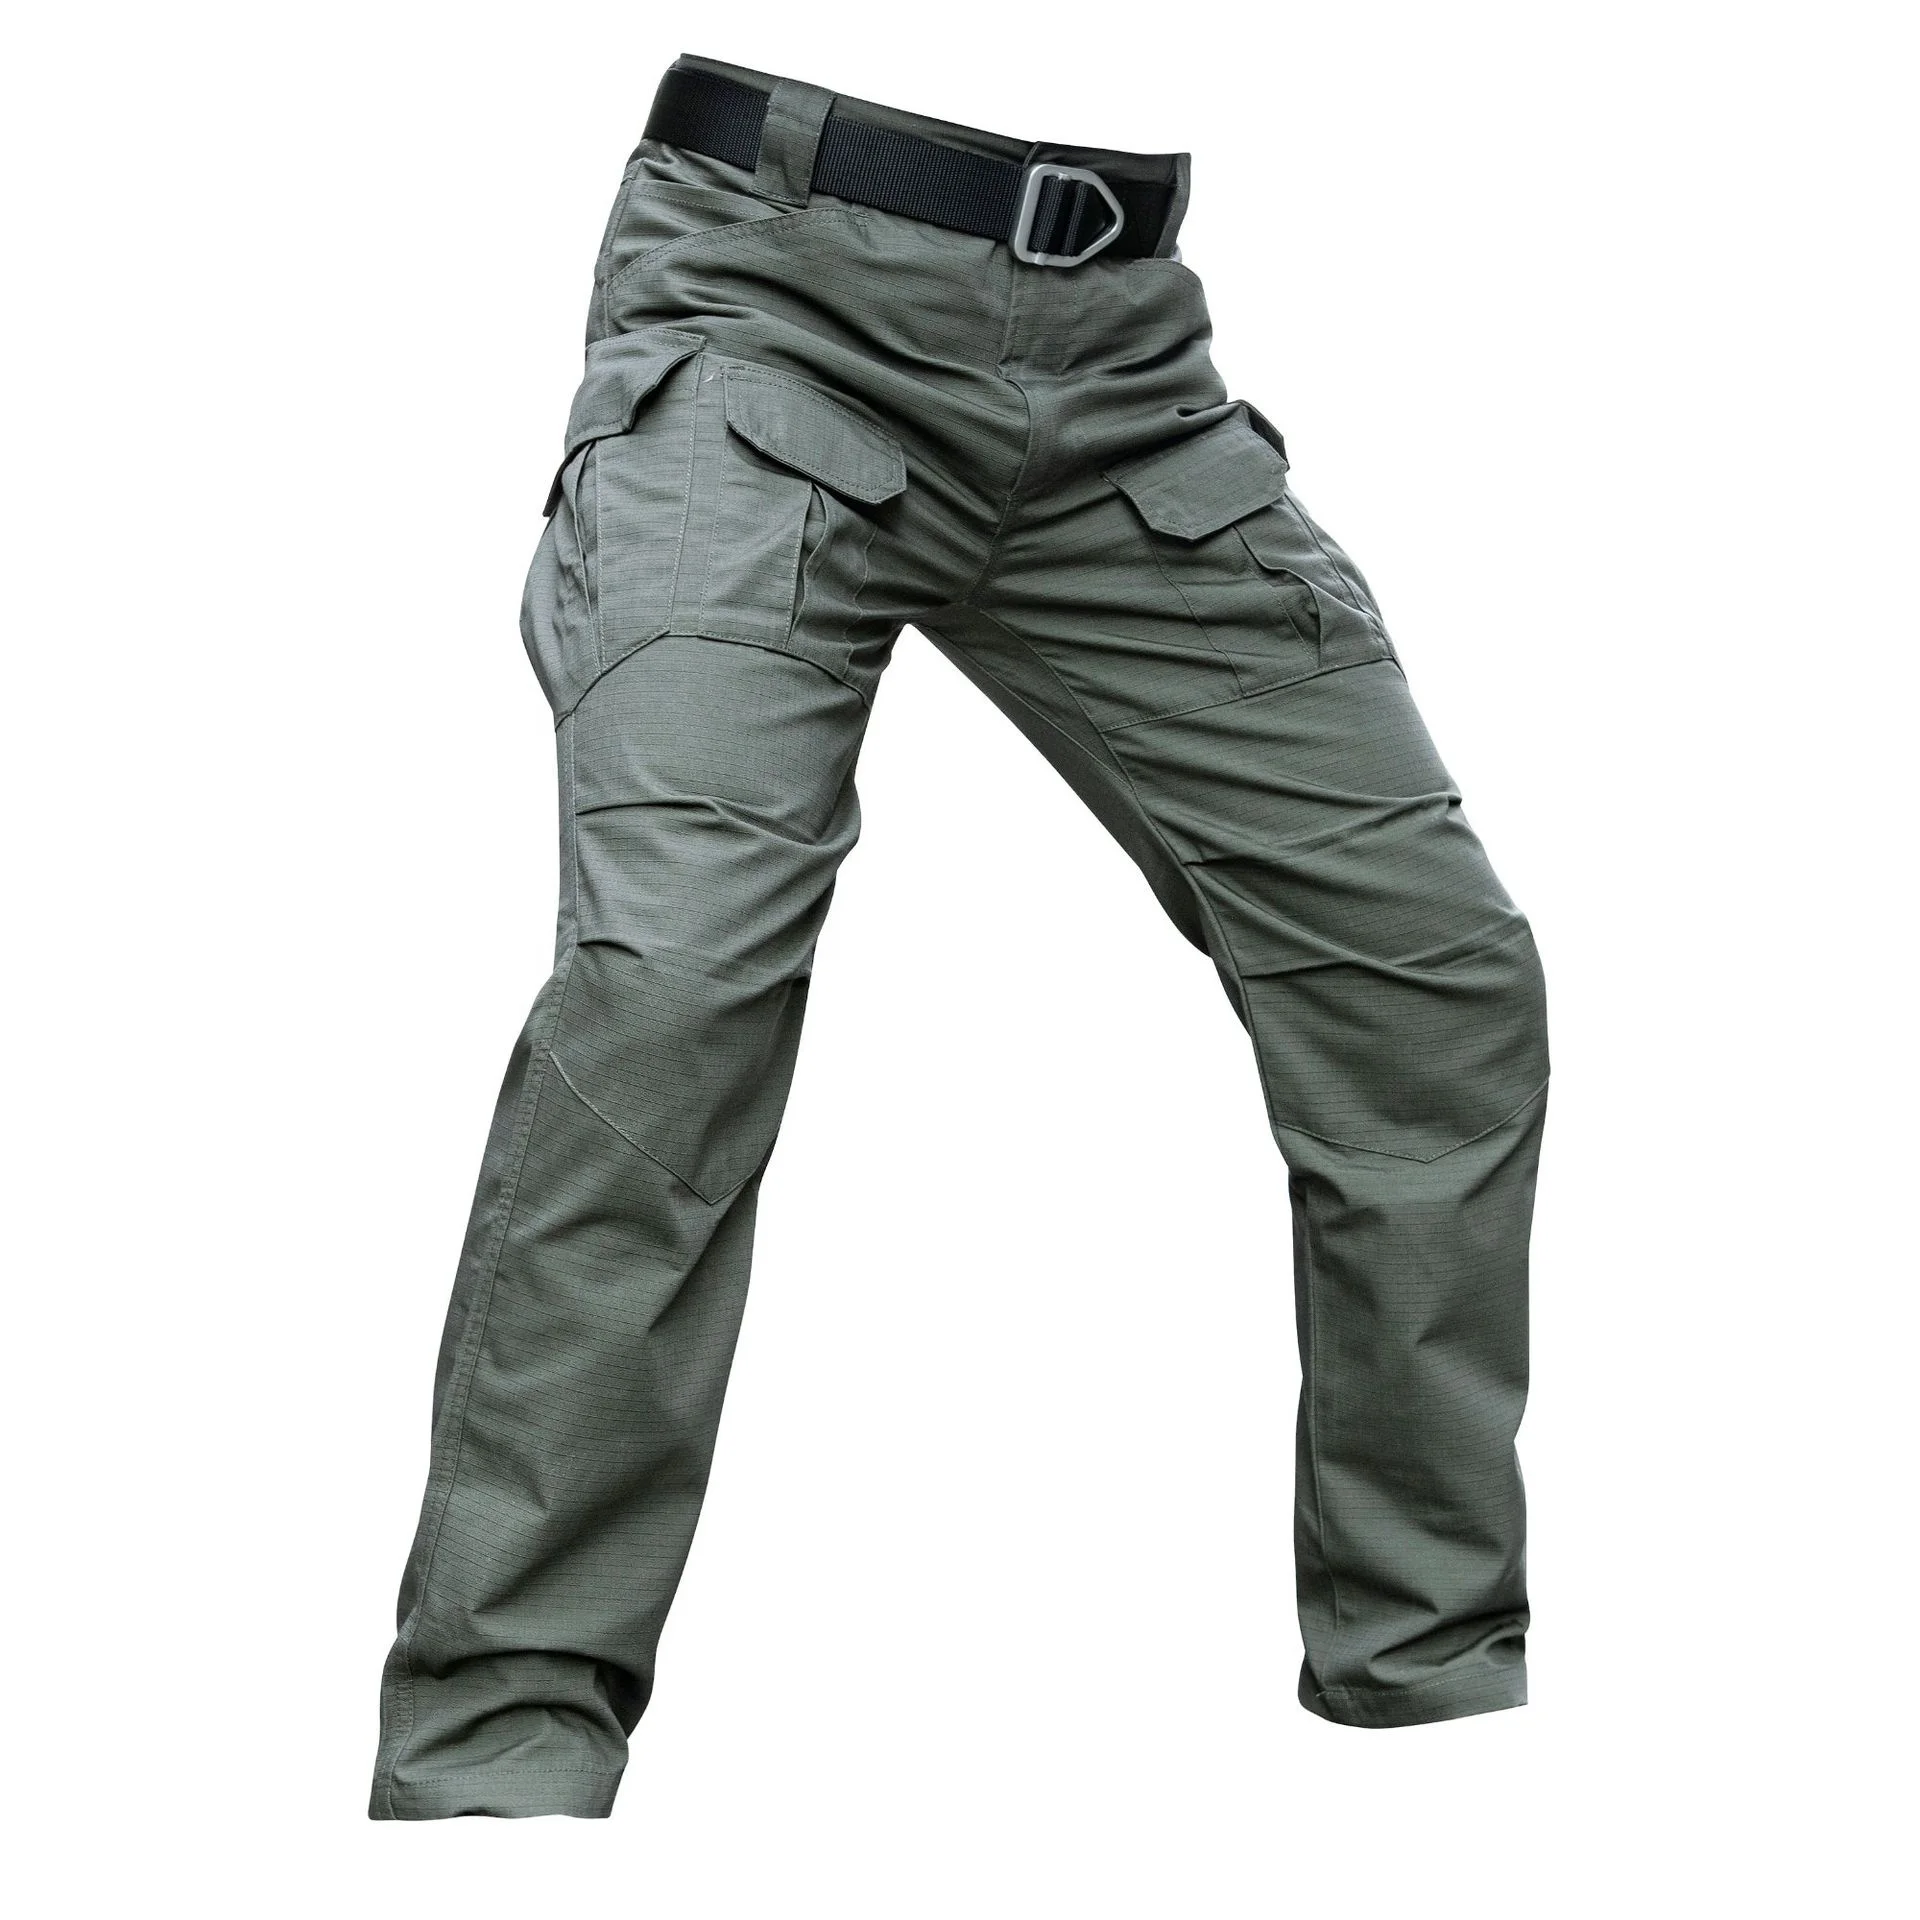 Pantalones tácticos Repelentes y Flexibles Hombre IX7 – Tienda Online